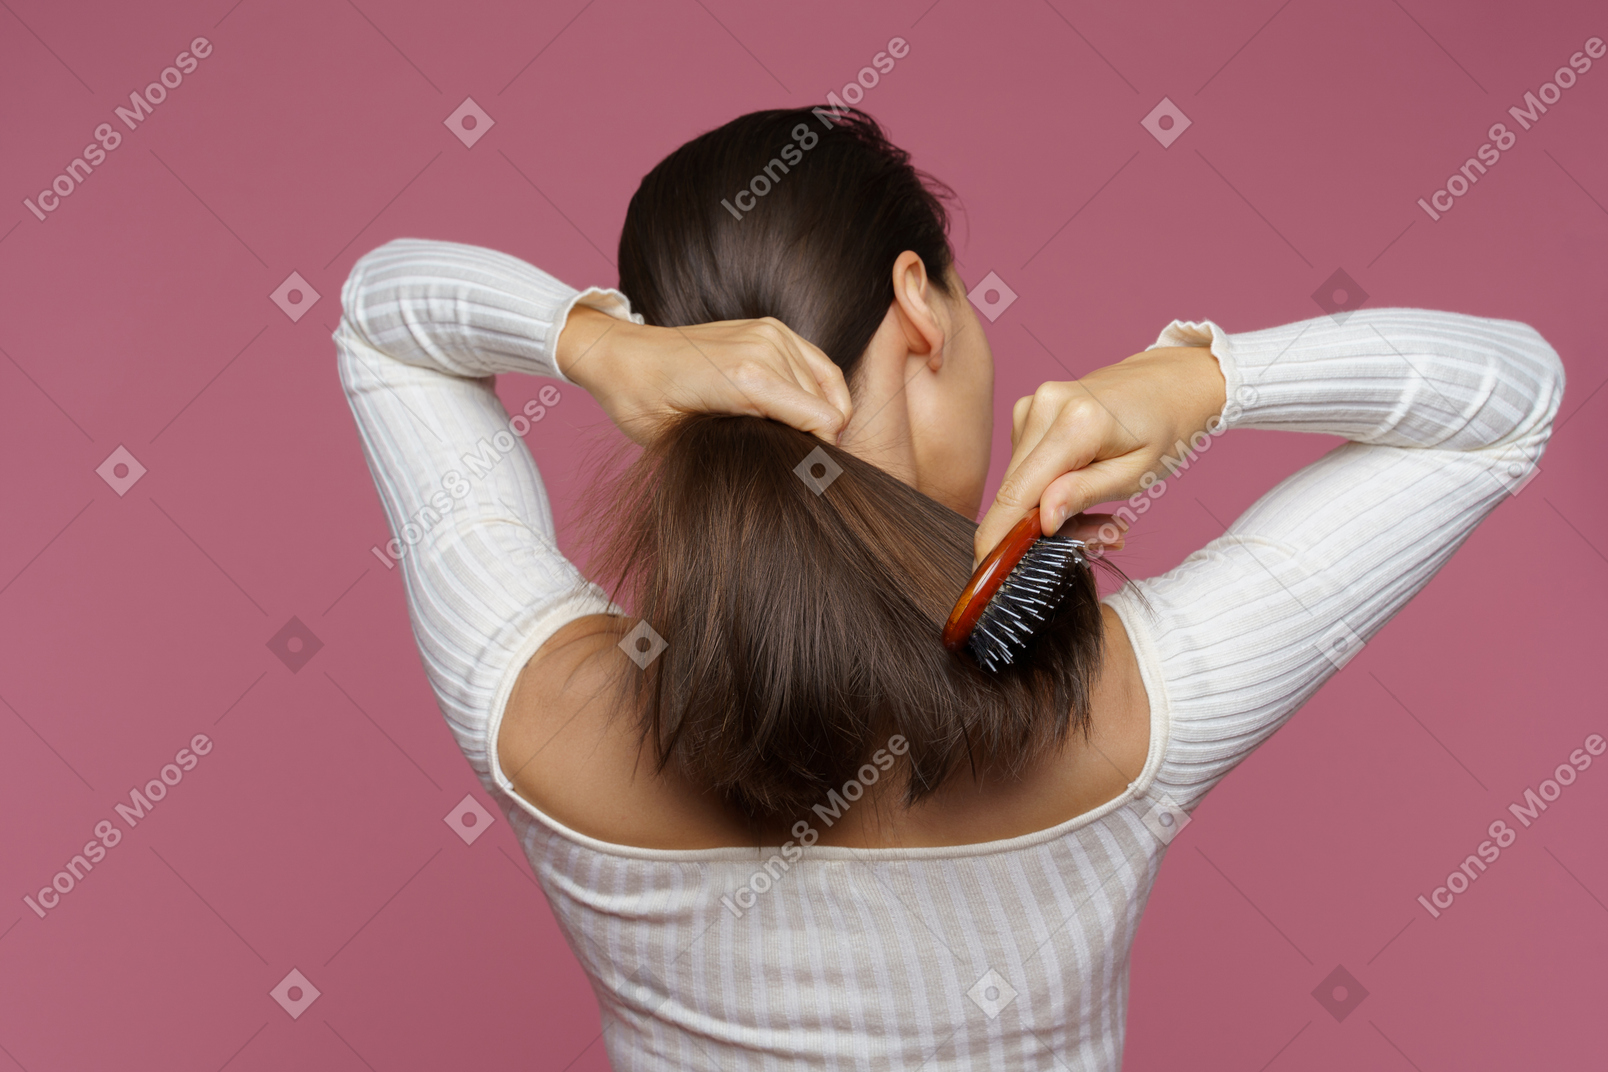 Vista posterior de una mujer de cabello castaño peinándose